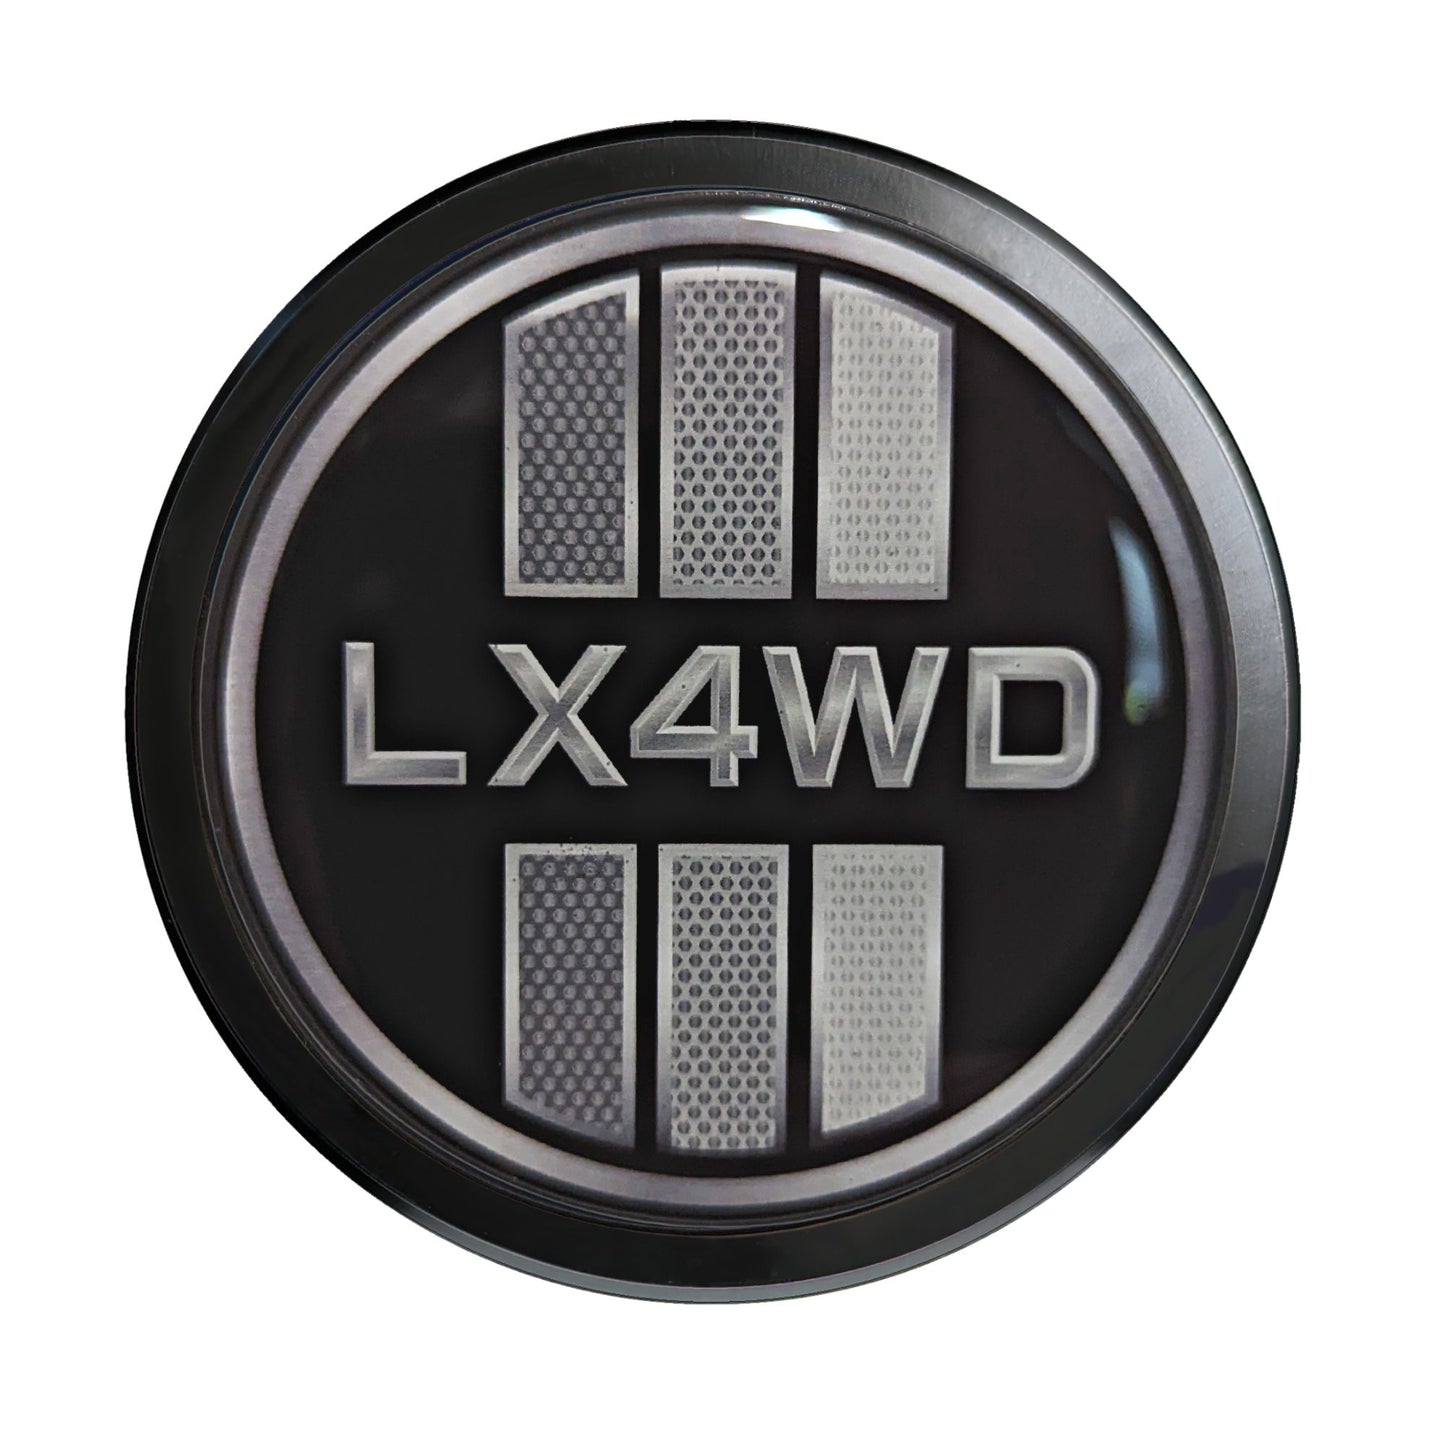 Aluminum Grille Badge Emblem For Lexus LX Prado 4WD Blackout